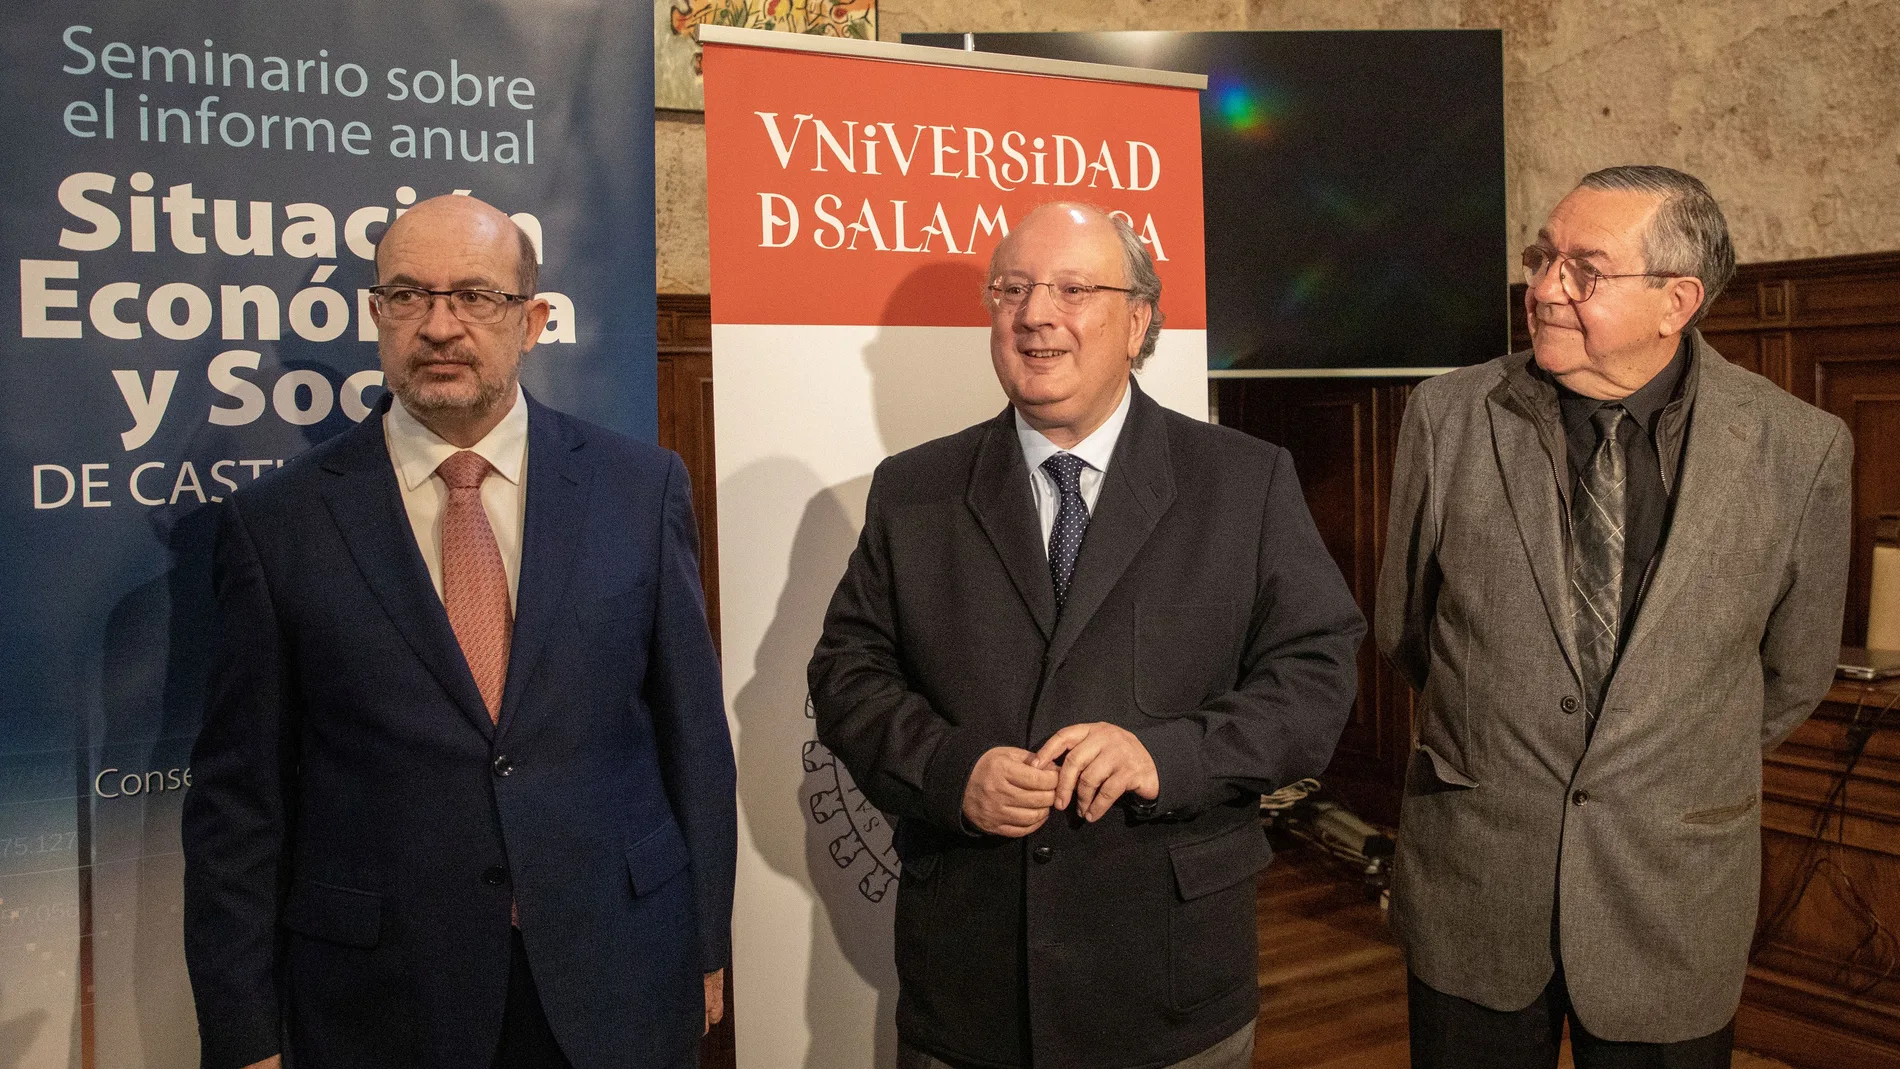 El presidente del CES, Enrique Cabero, junto a José Luis Rojo, catedrático de la Uva, antes del seminario en la Usal